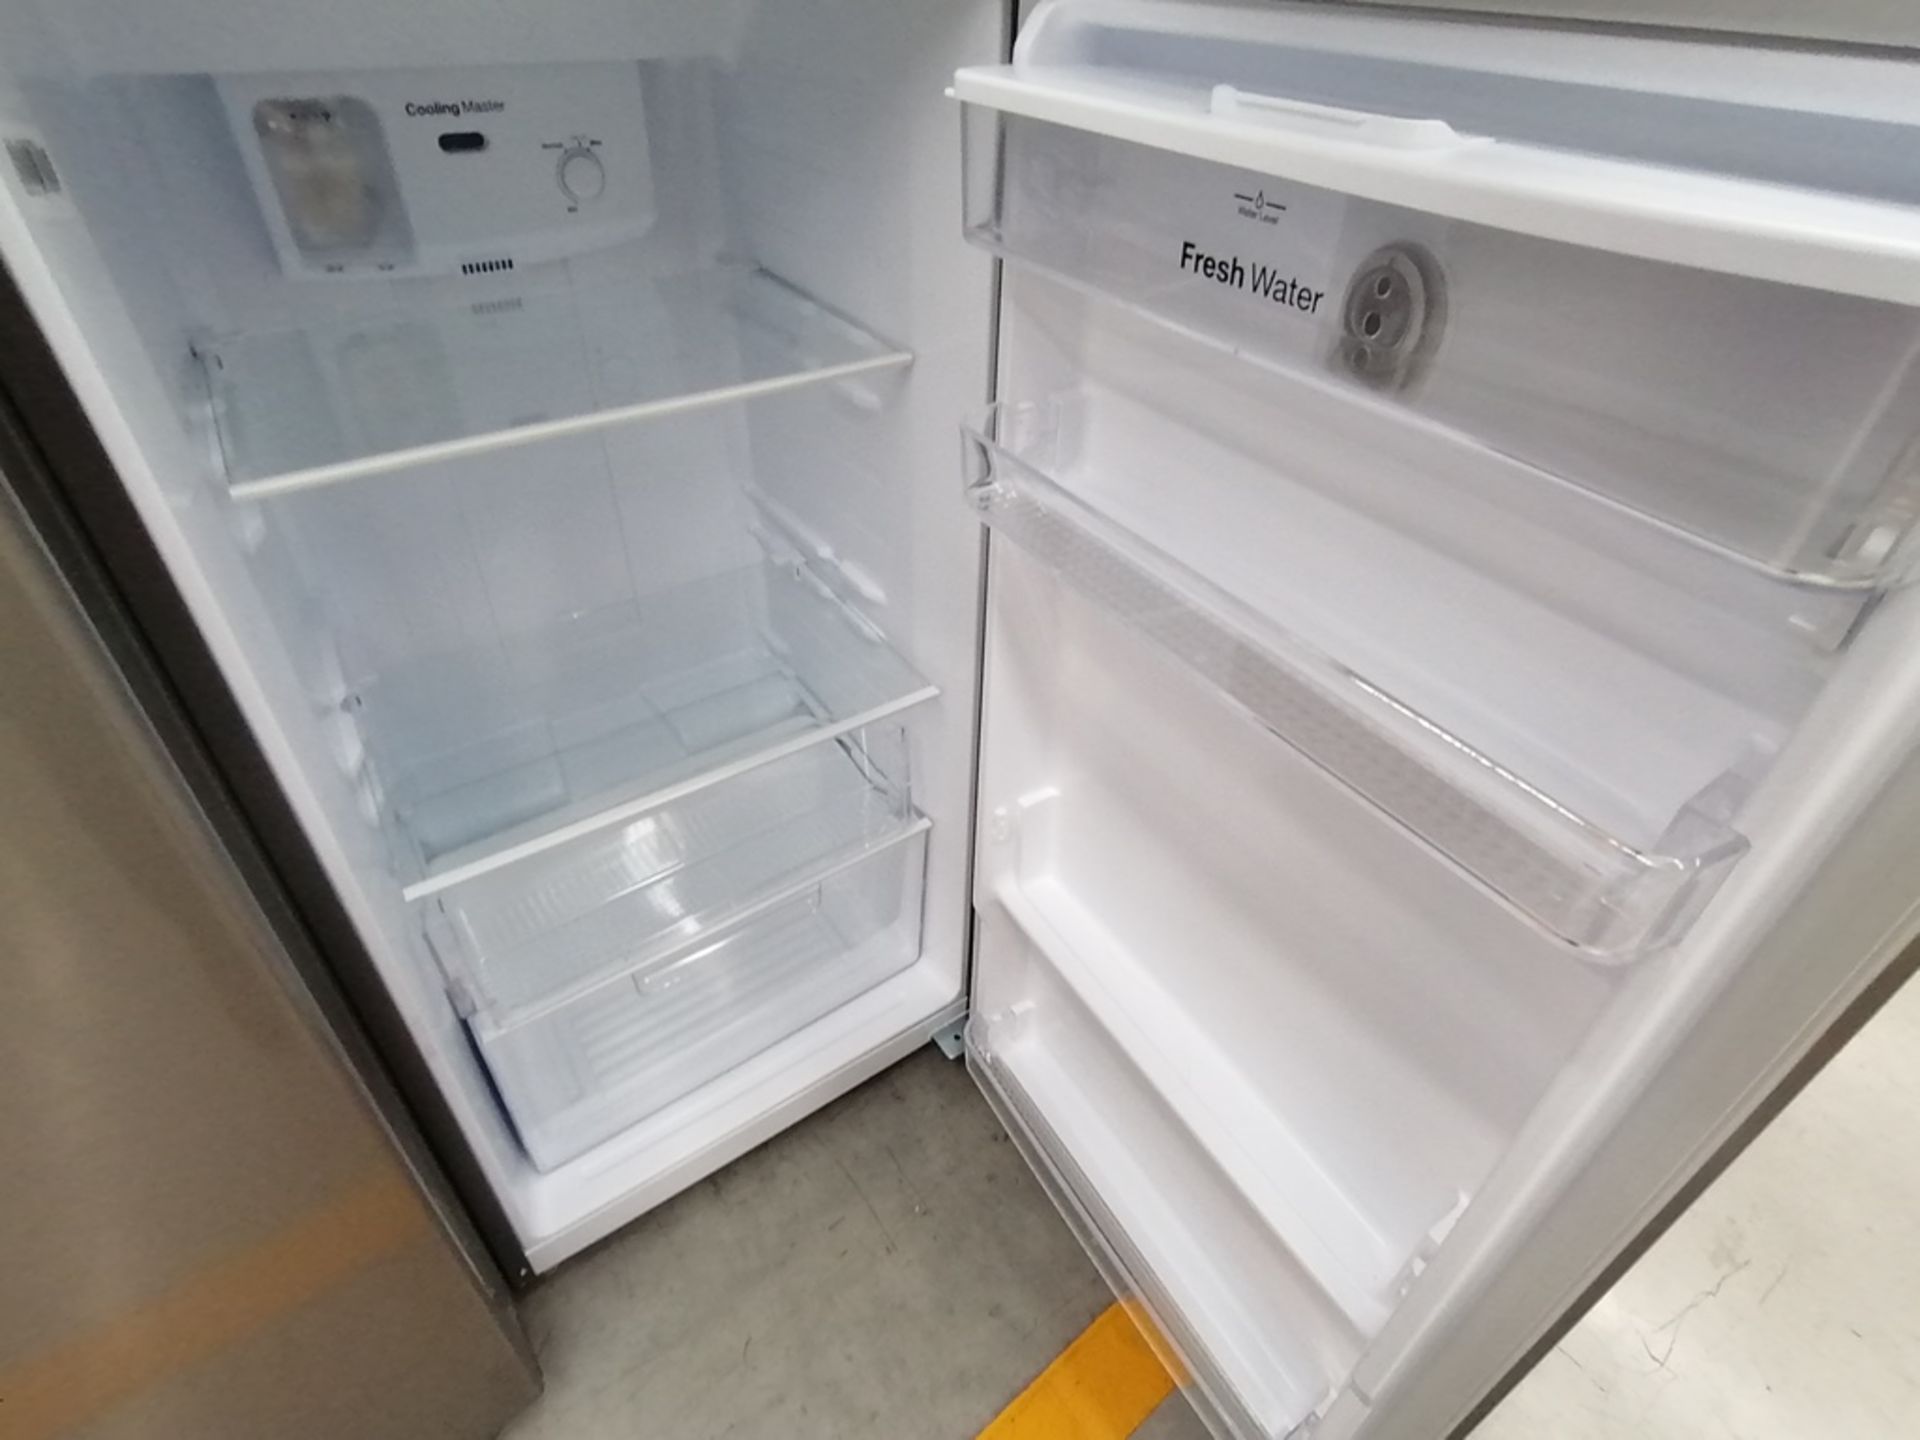 Lote de 2 Refrigeradores incluye: 1 Refrigerador, Marca Winia, Modelo DFR25120GN, Serie MR219N11624 - Image 5 of 15